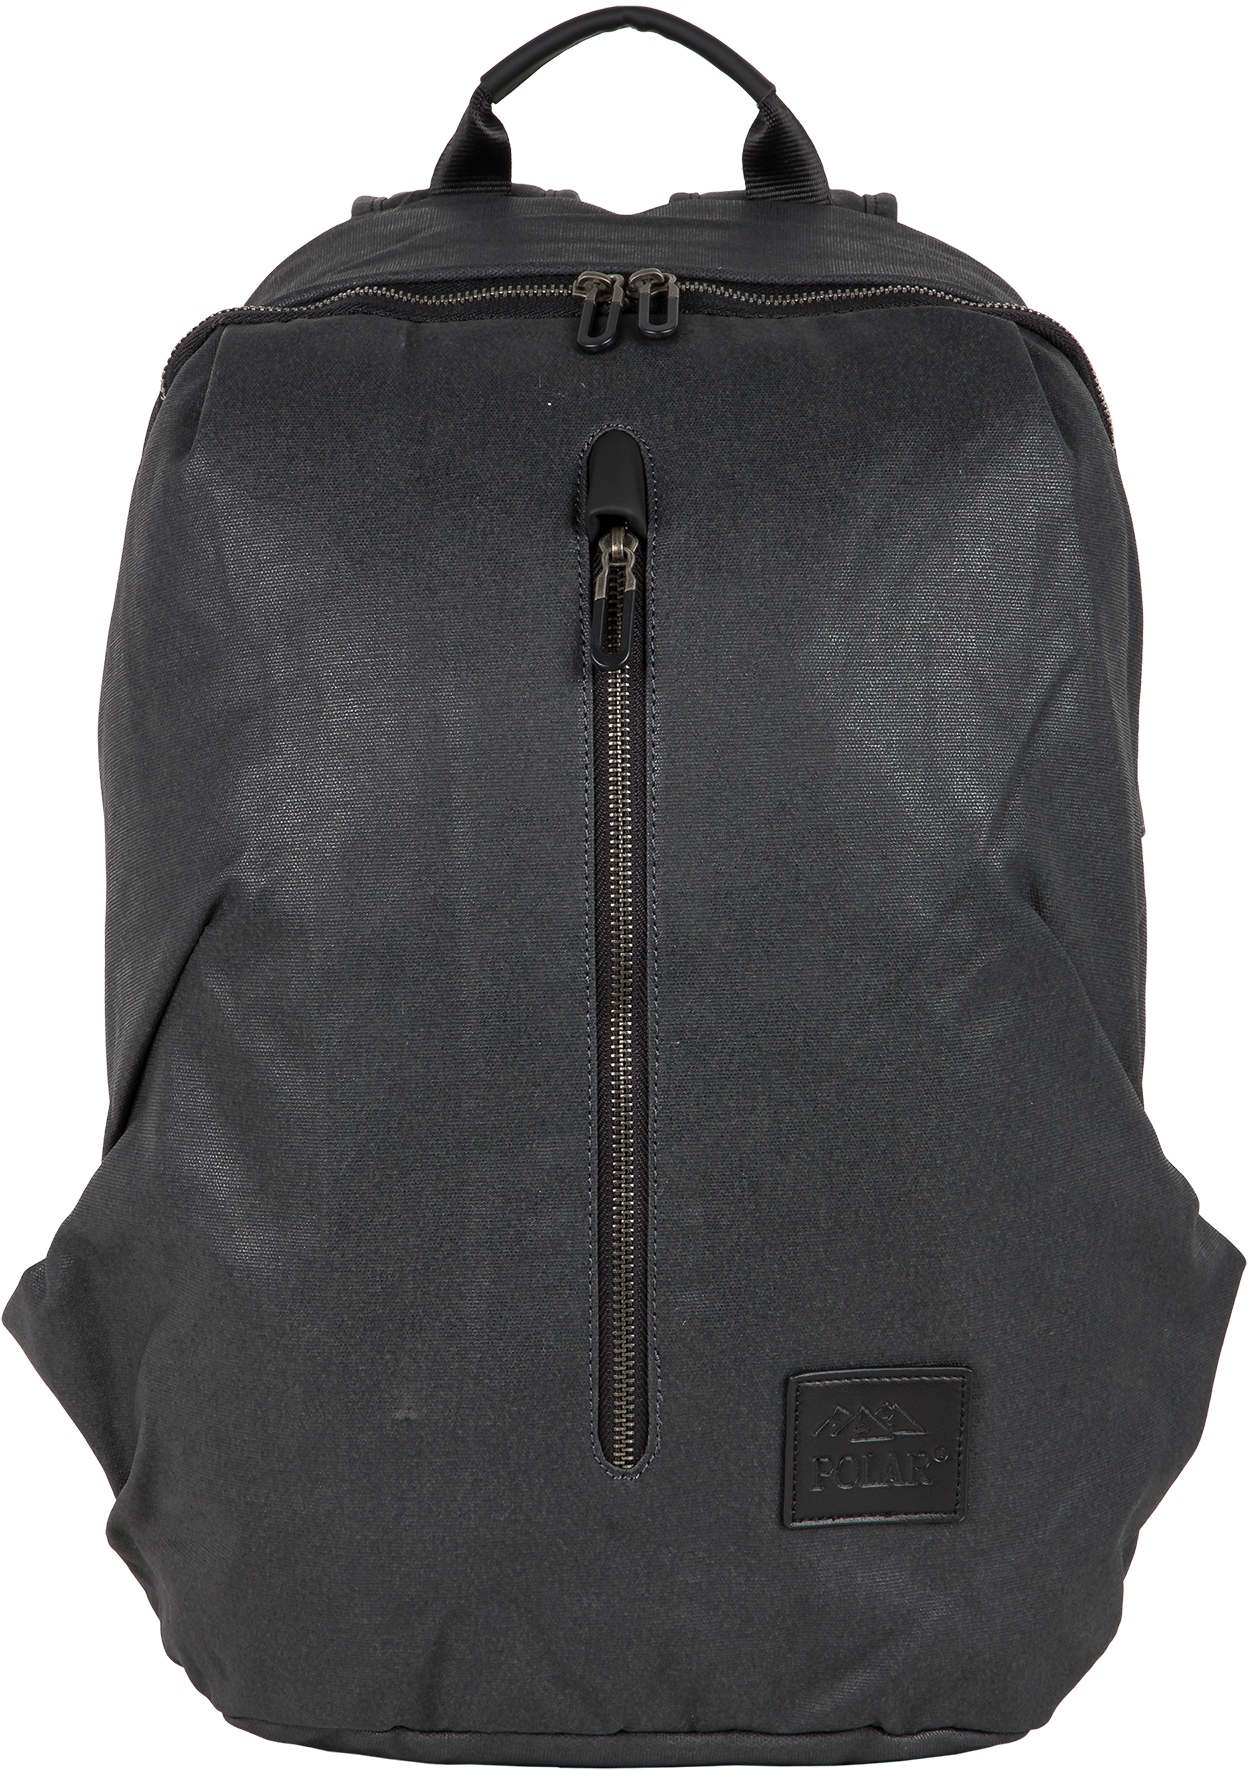 Рюкзак Polar П0210 15 л черный